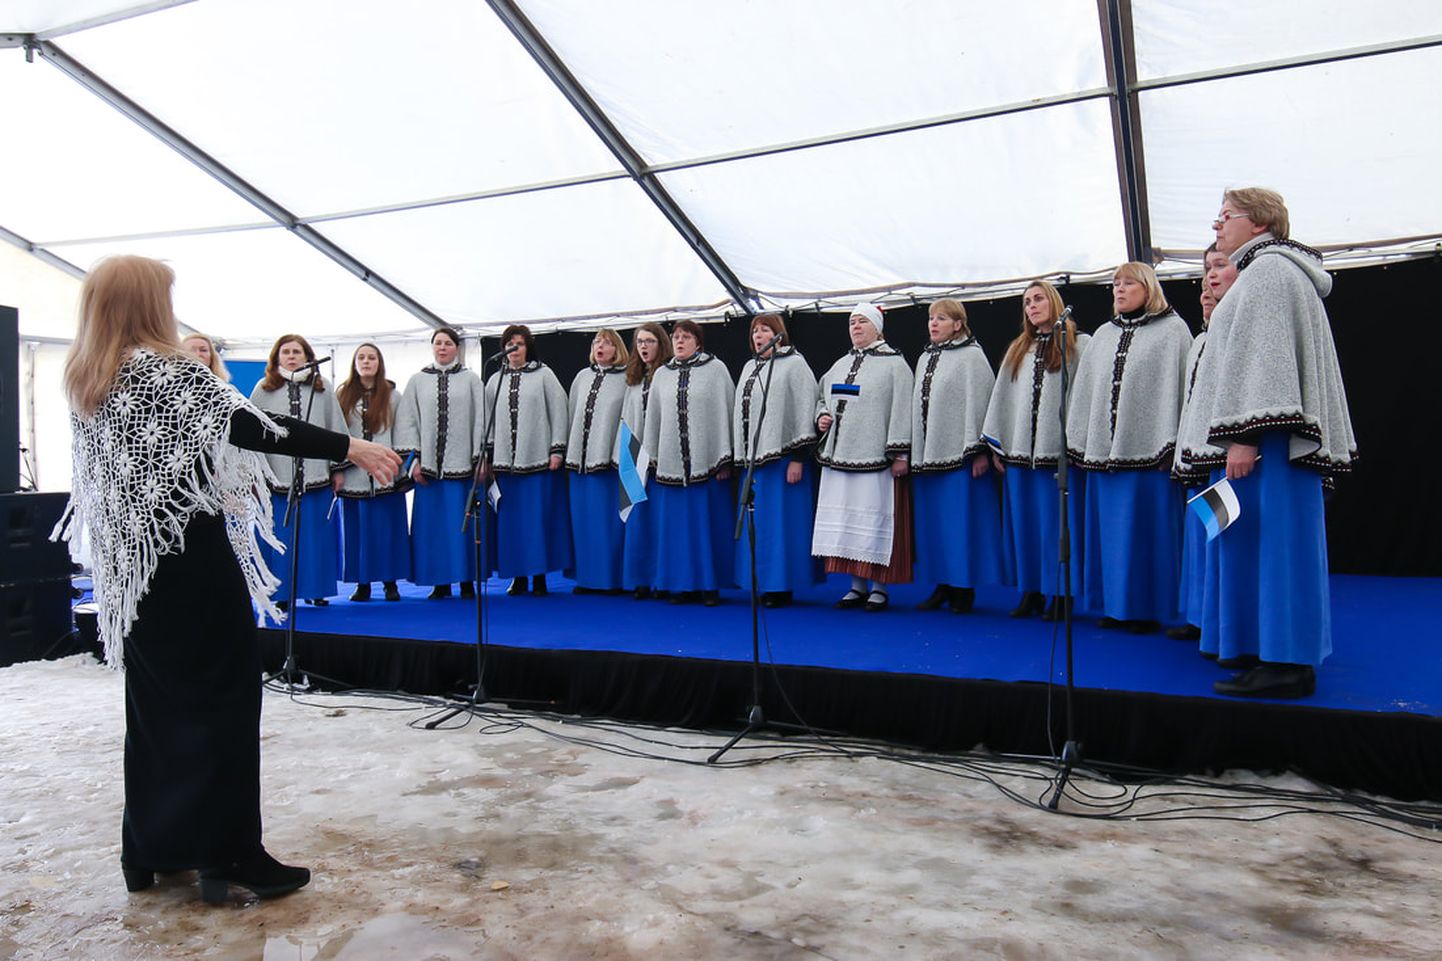 Tõrva kammernaiskoor astus üles ka Eesti Vabariigi 100. sünnipäeva pidustustel 24. veebruaril oma kodulinnas.